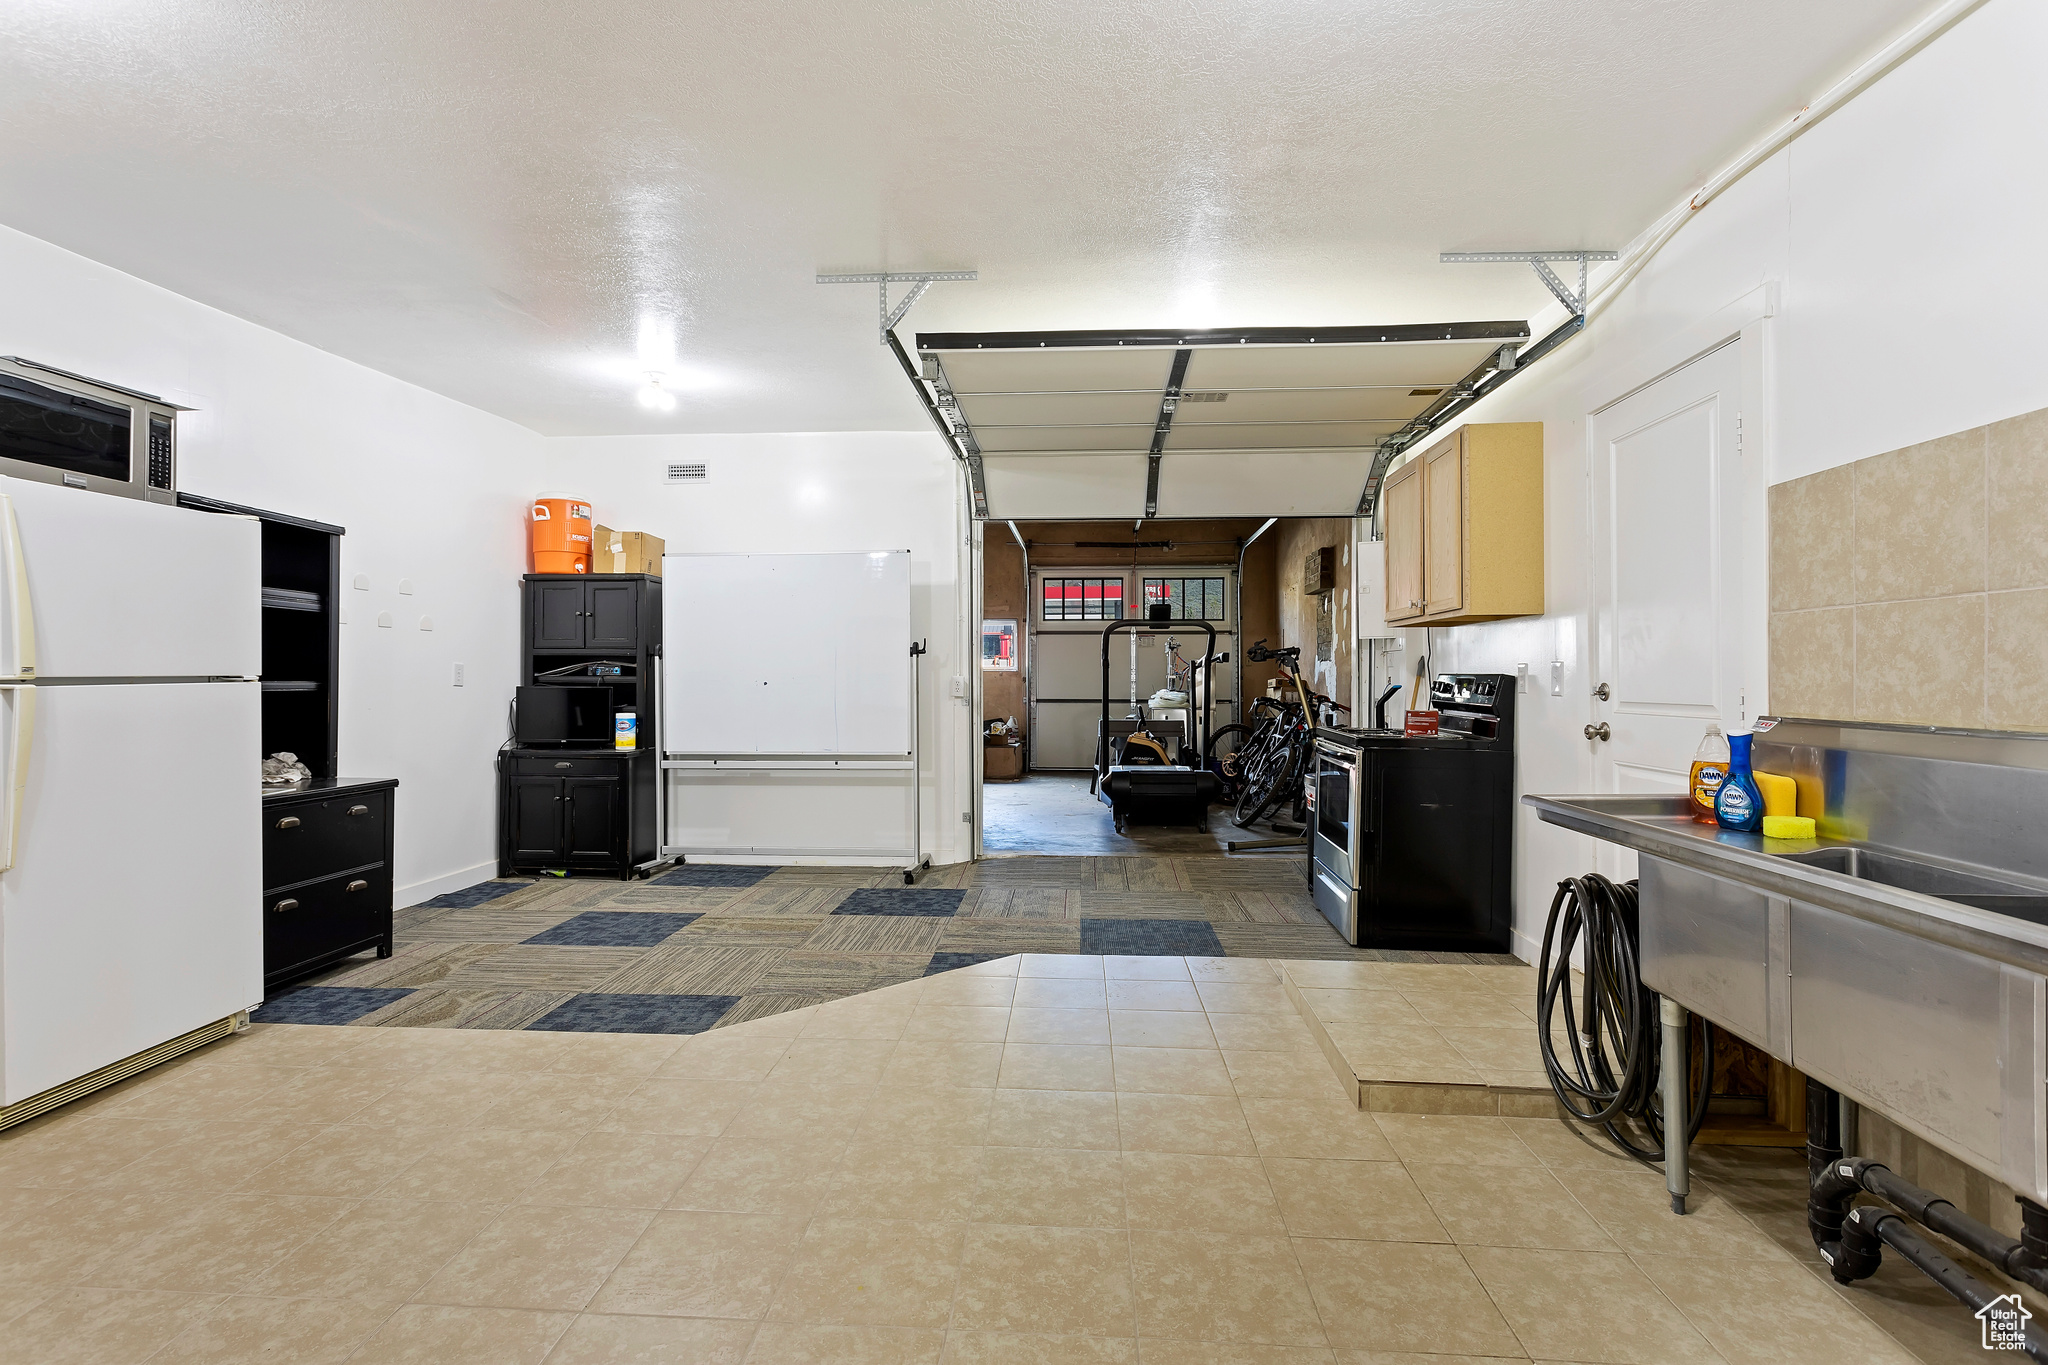 Garage featuring white refrigerator